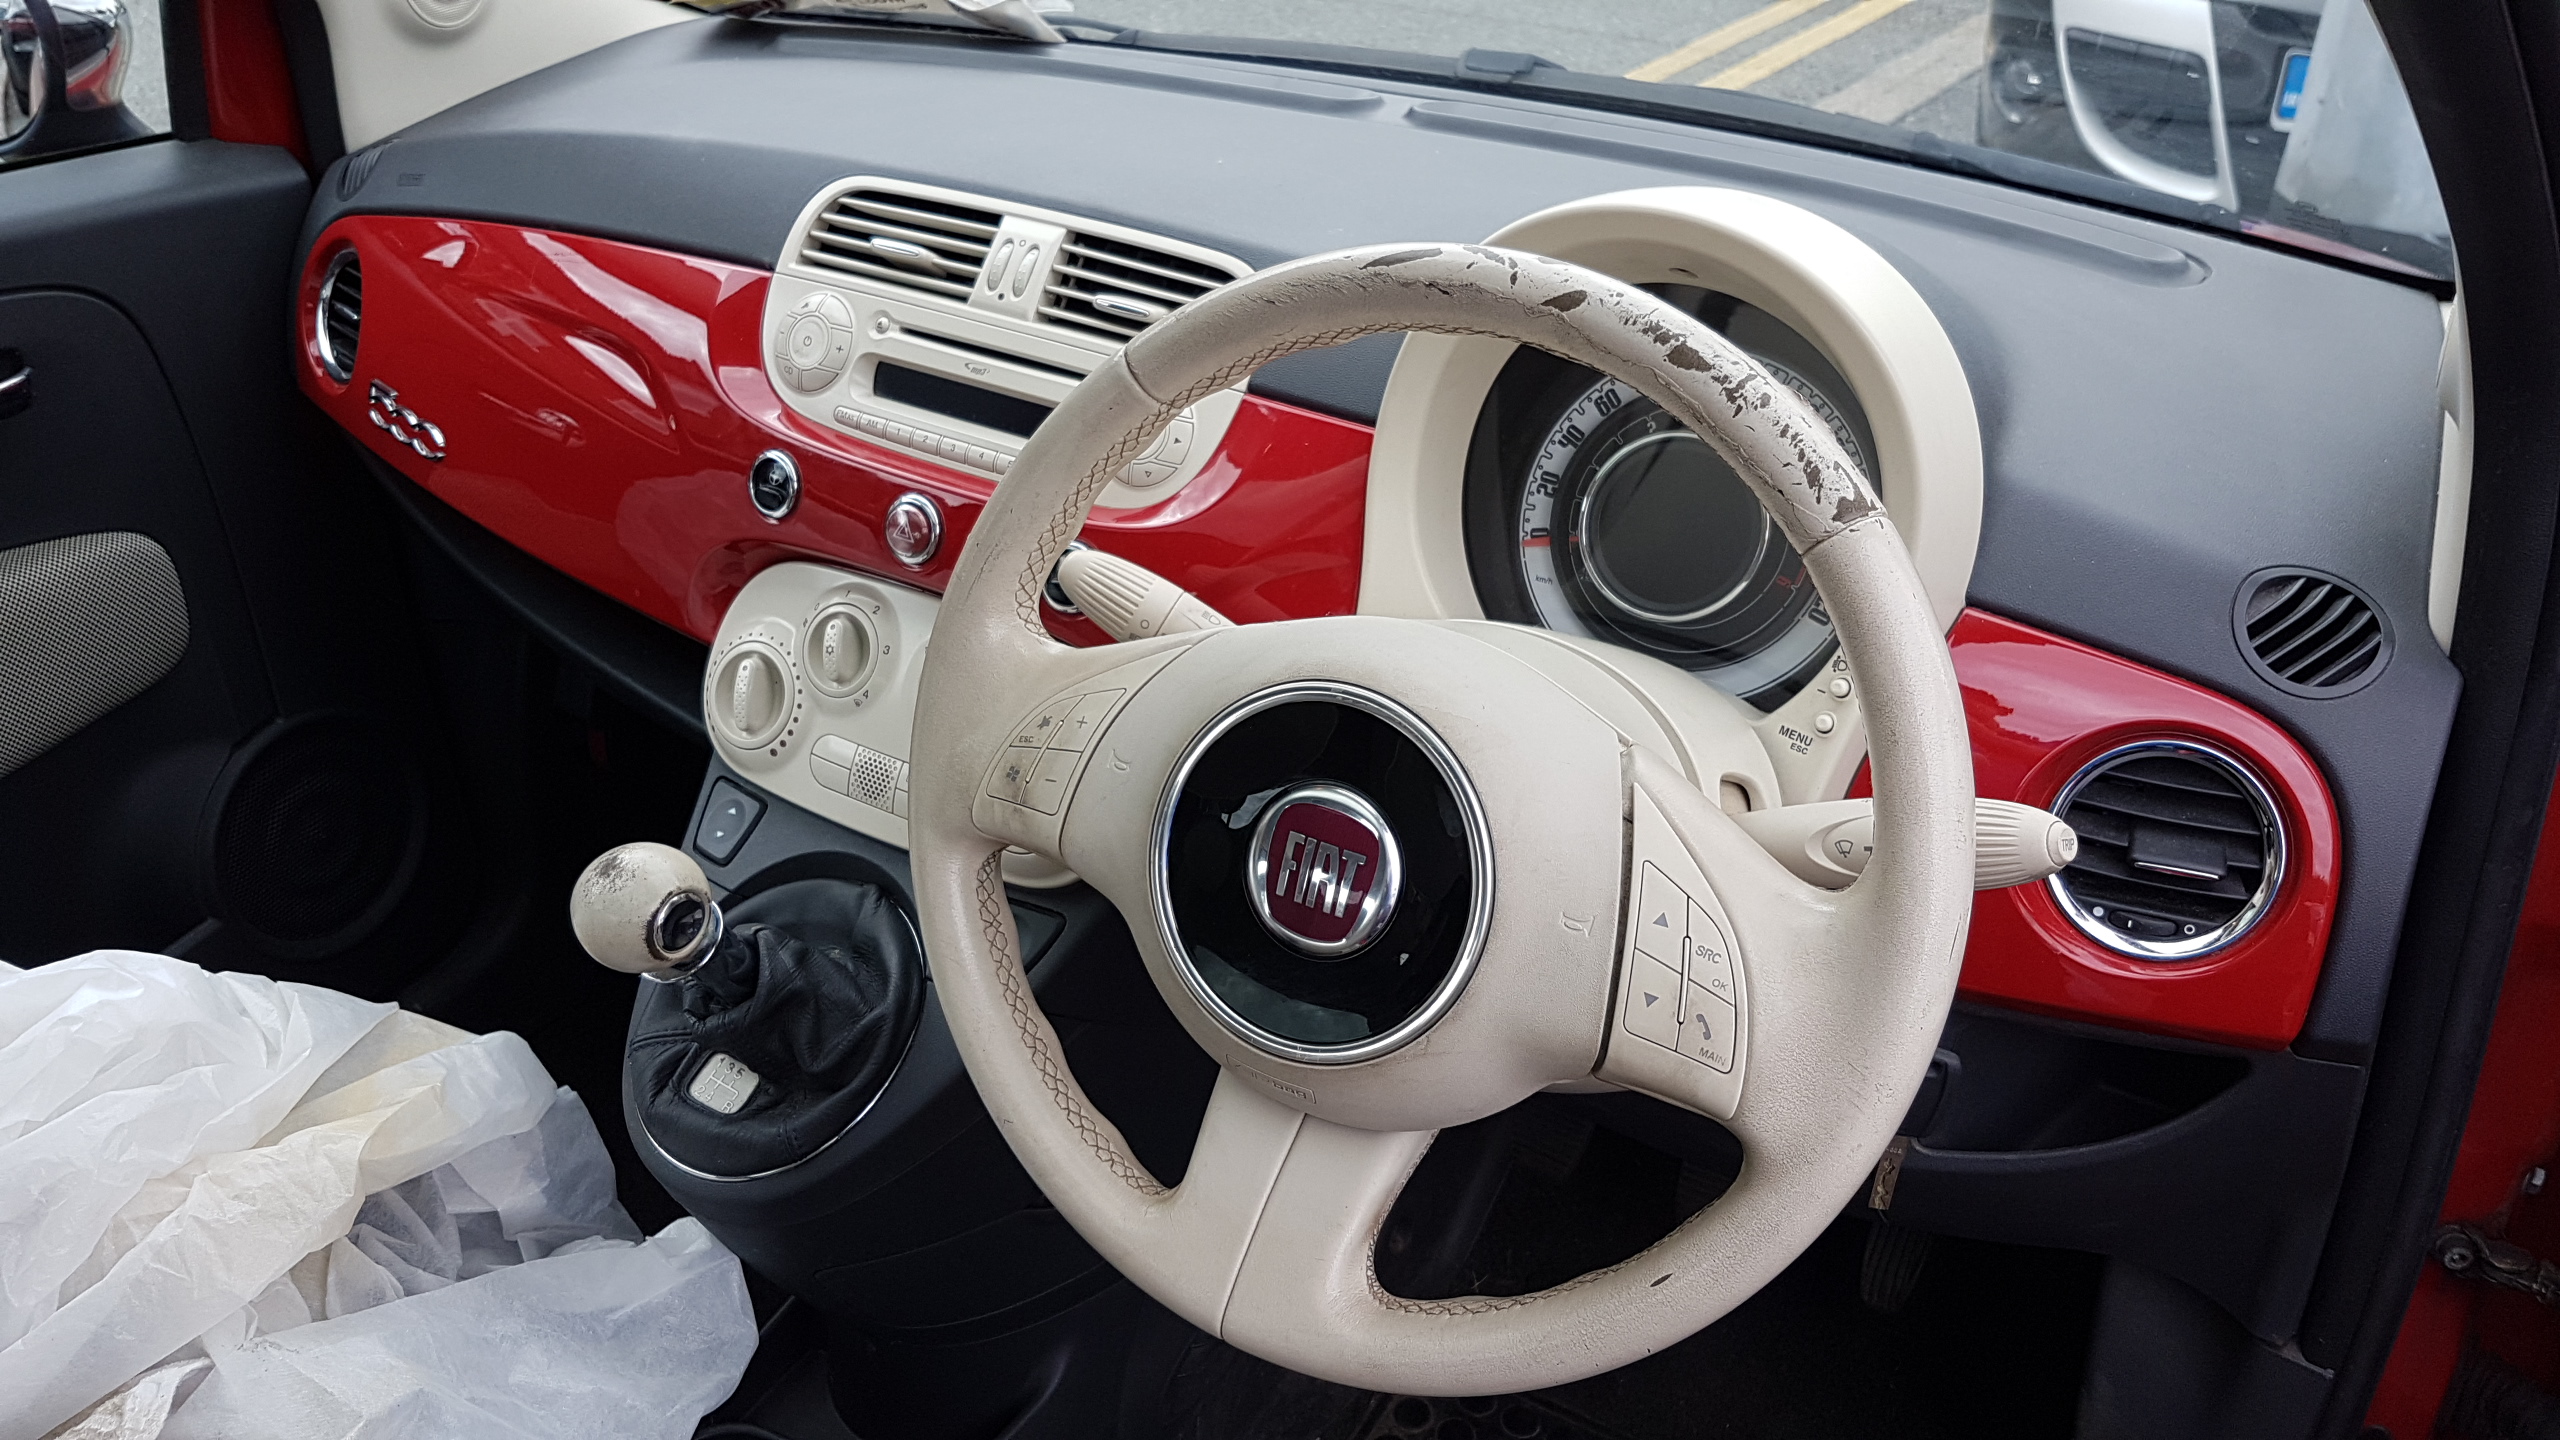 Fiat worn white steering wheel